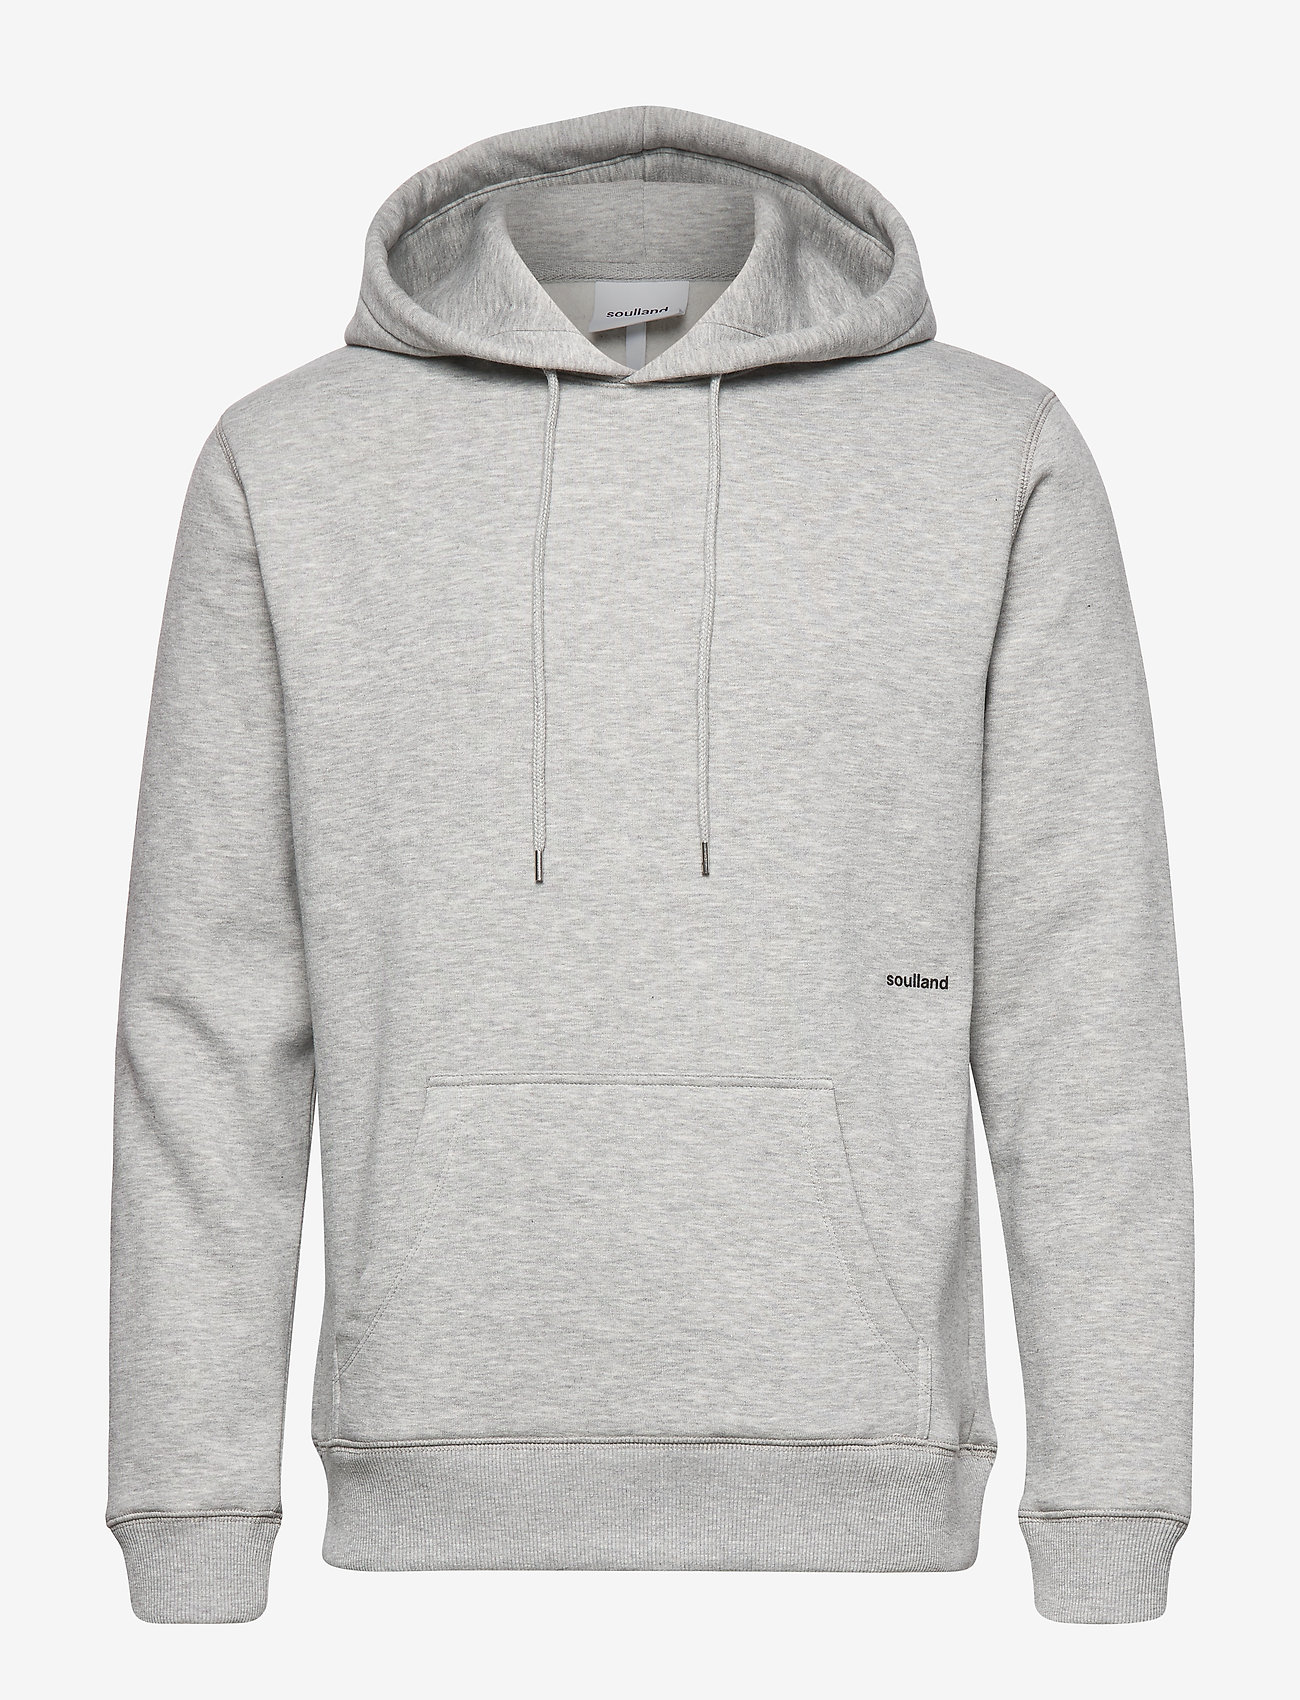 Soulland - Wallance hoodie - truien en hoodies - grey melange - 0